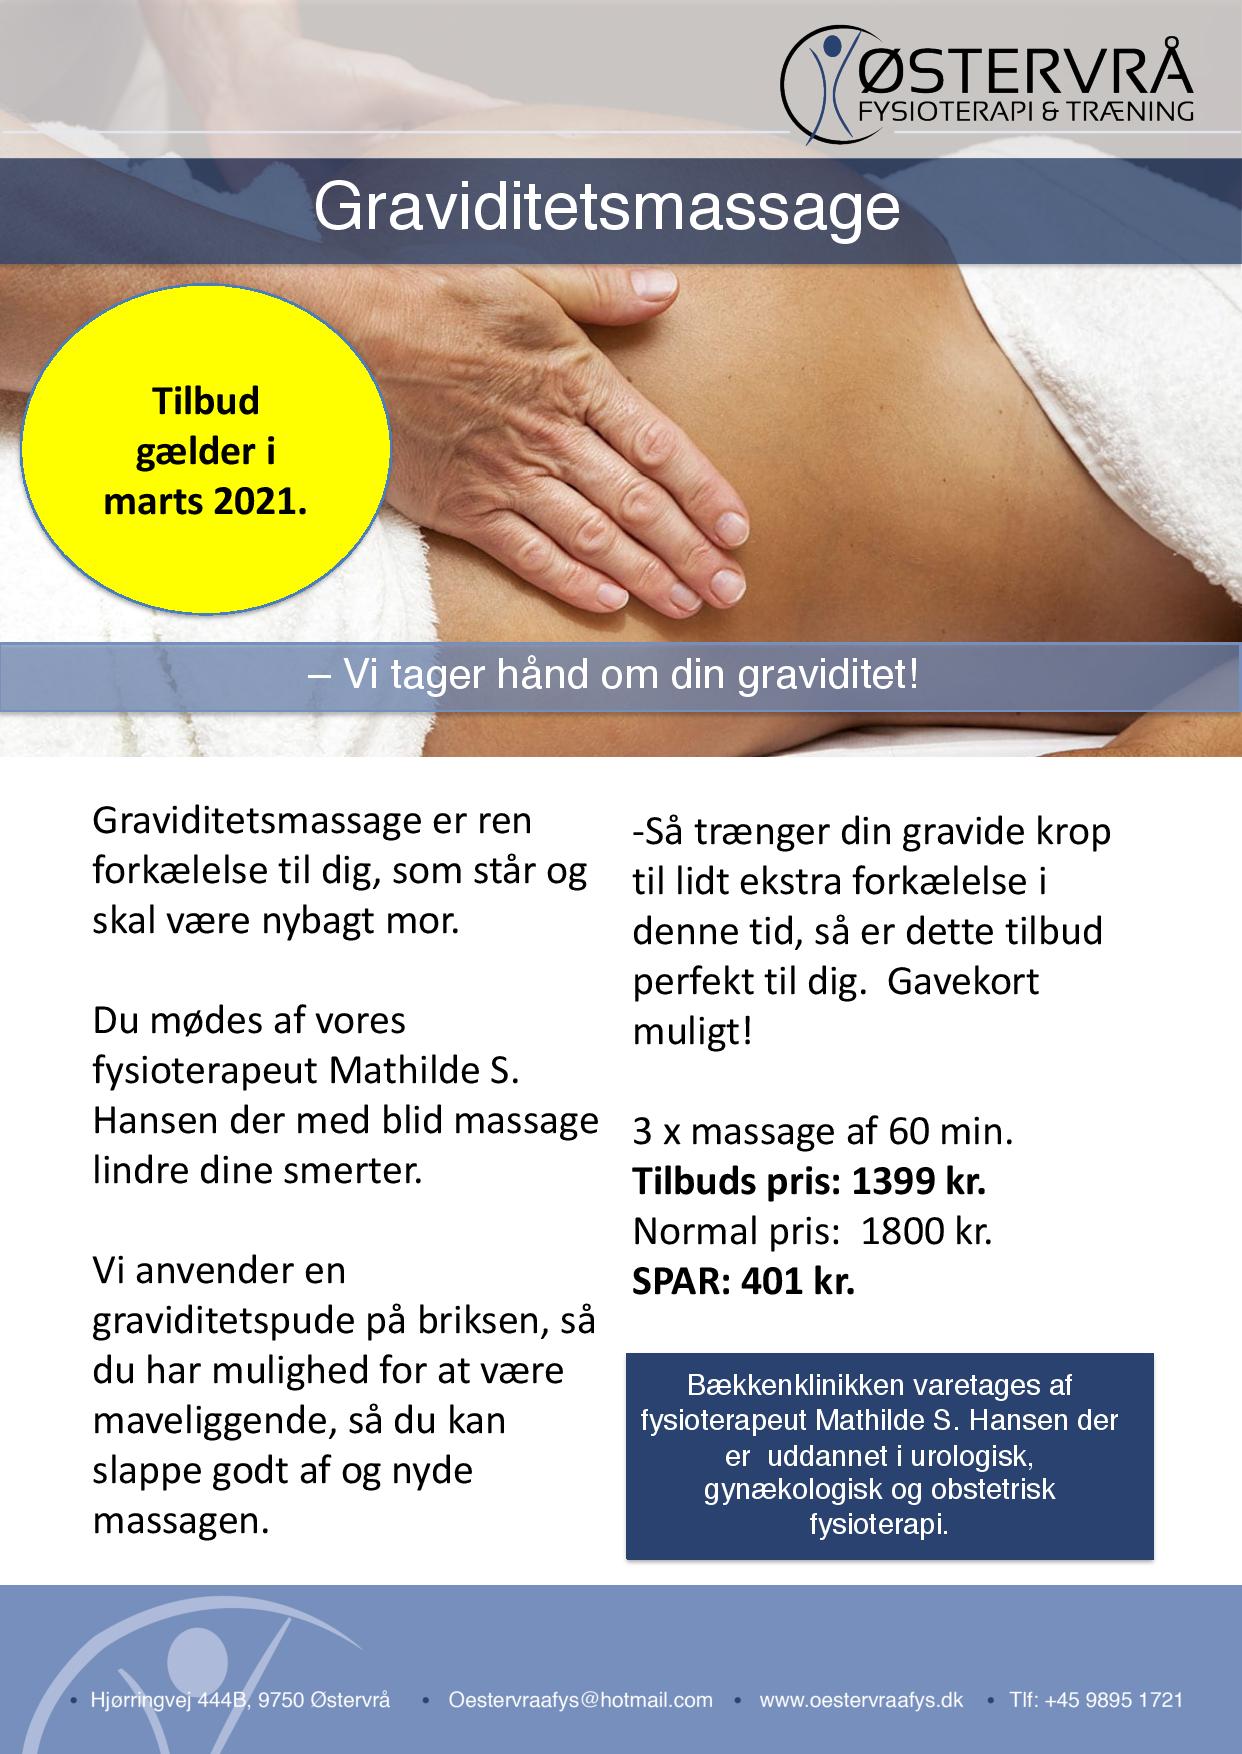 Graviditets massage tilbud rigtigt page 001 2